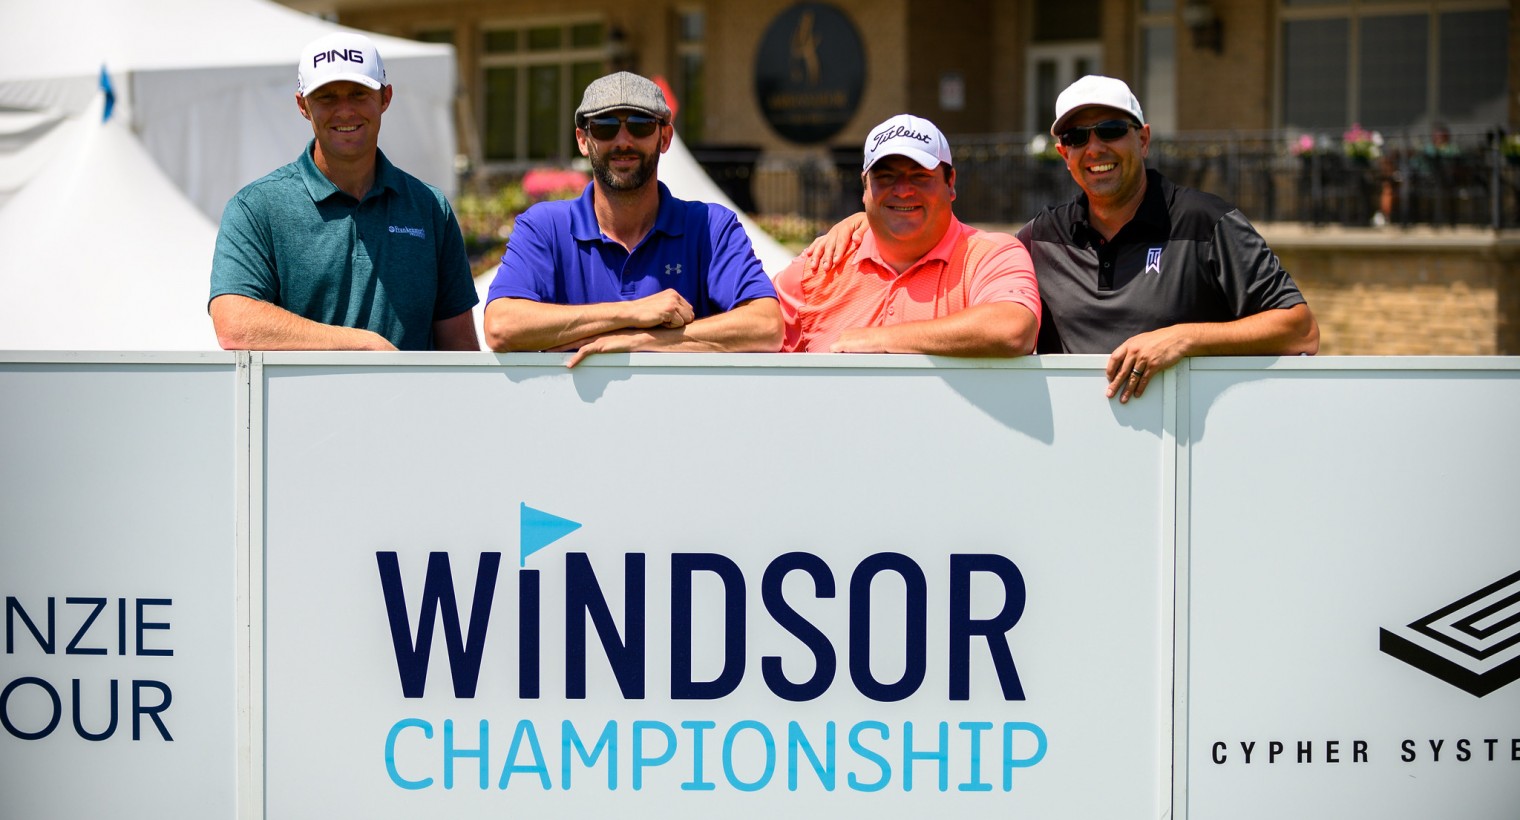 Windsor Open golf championship set for July 13-19 at Ambassador Golf Course